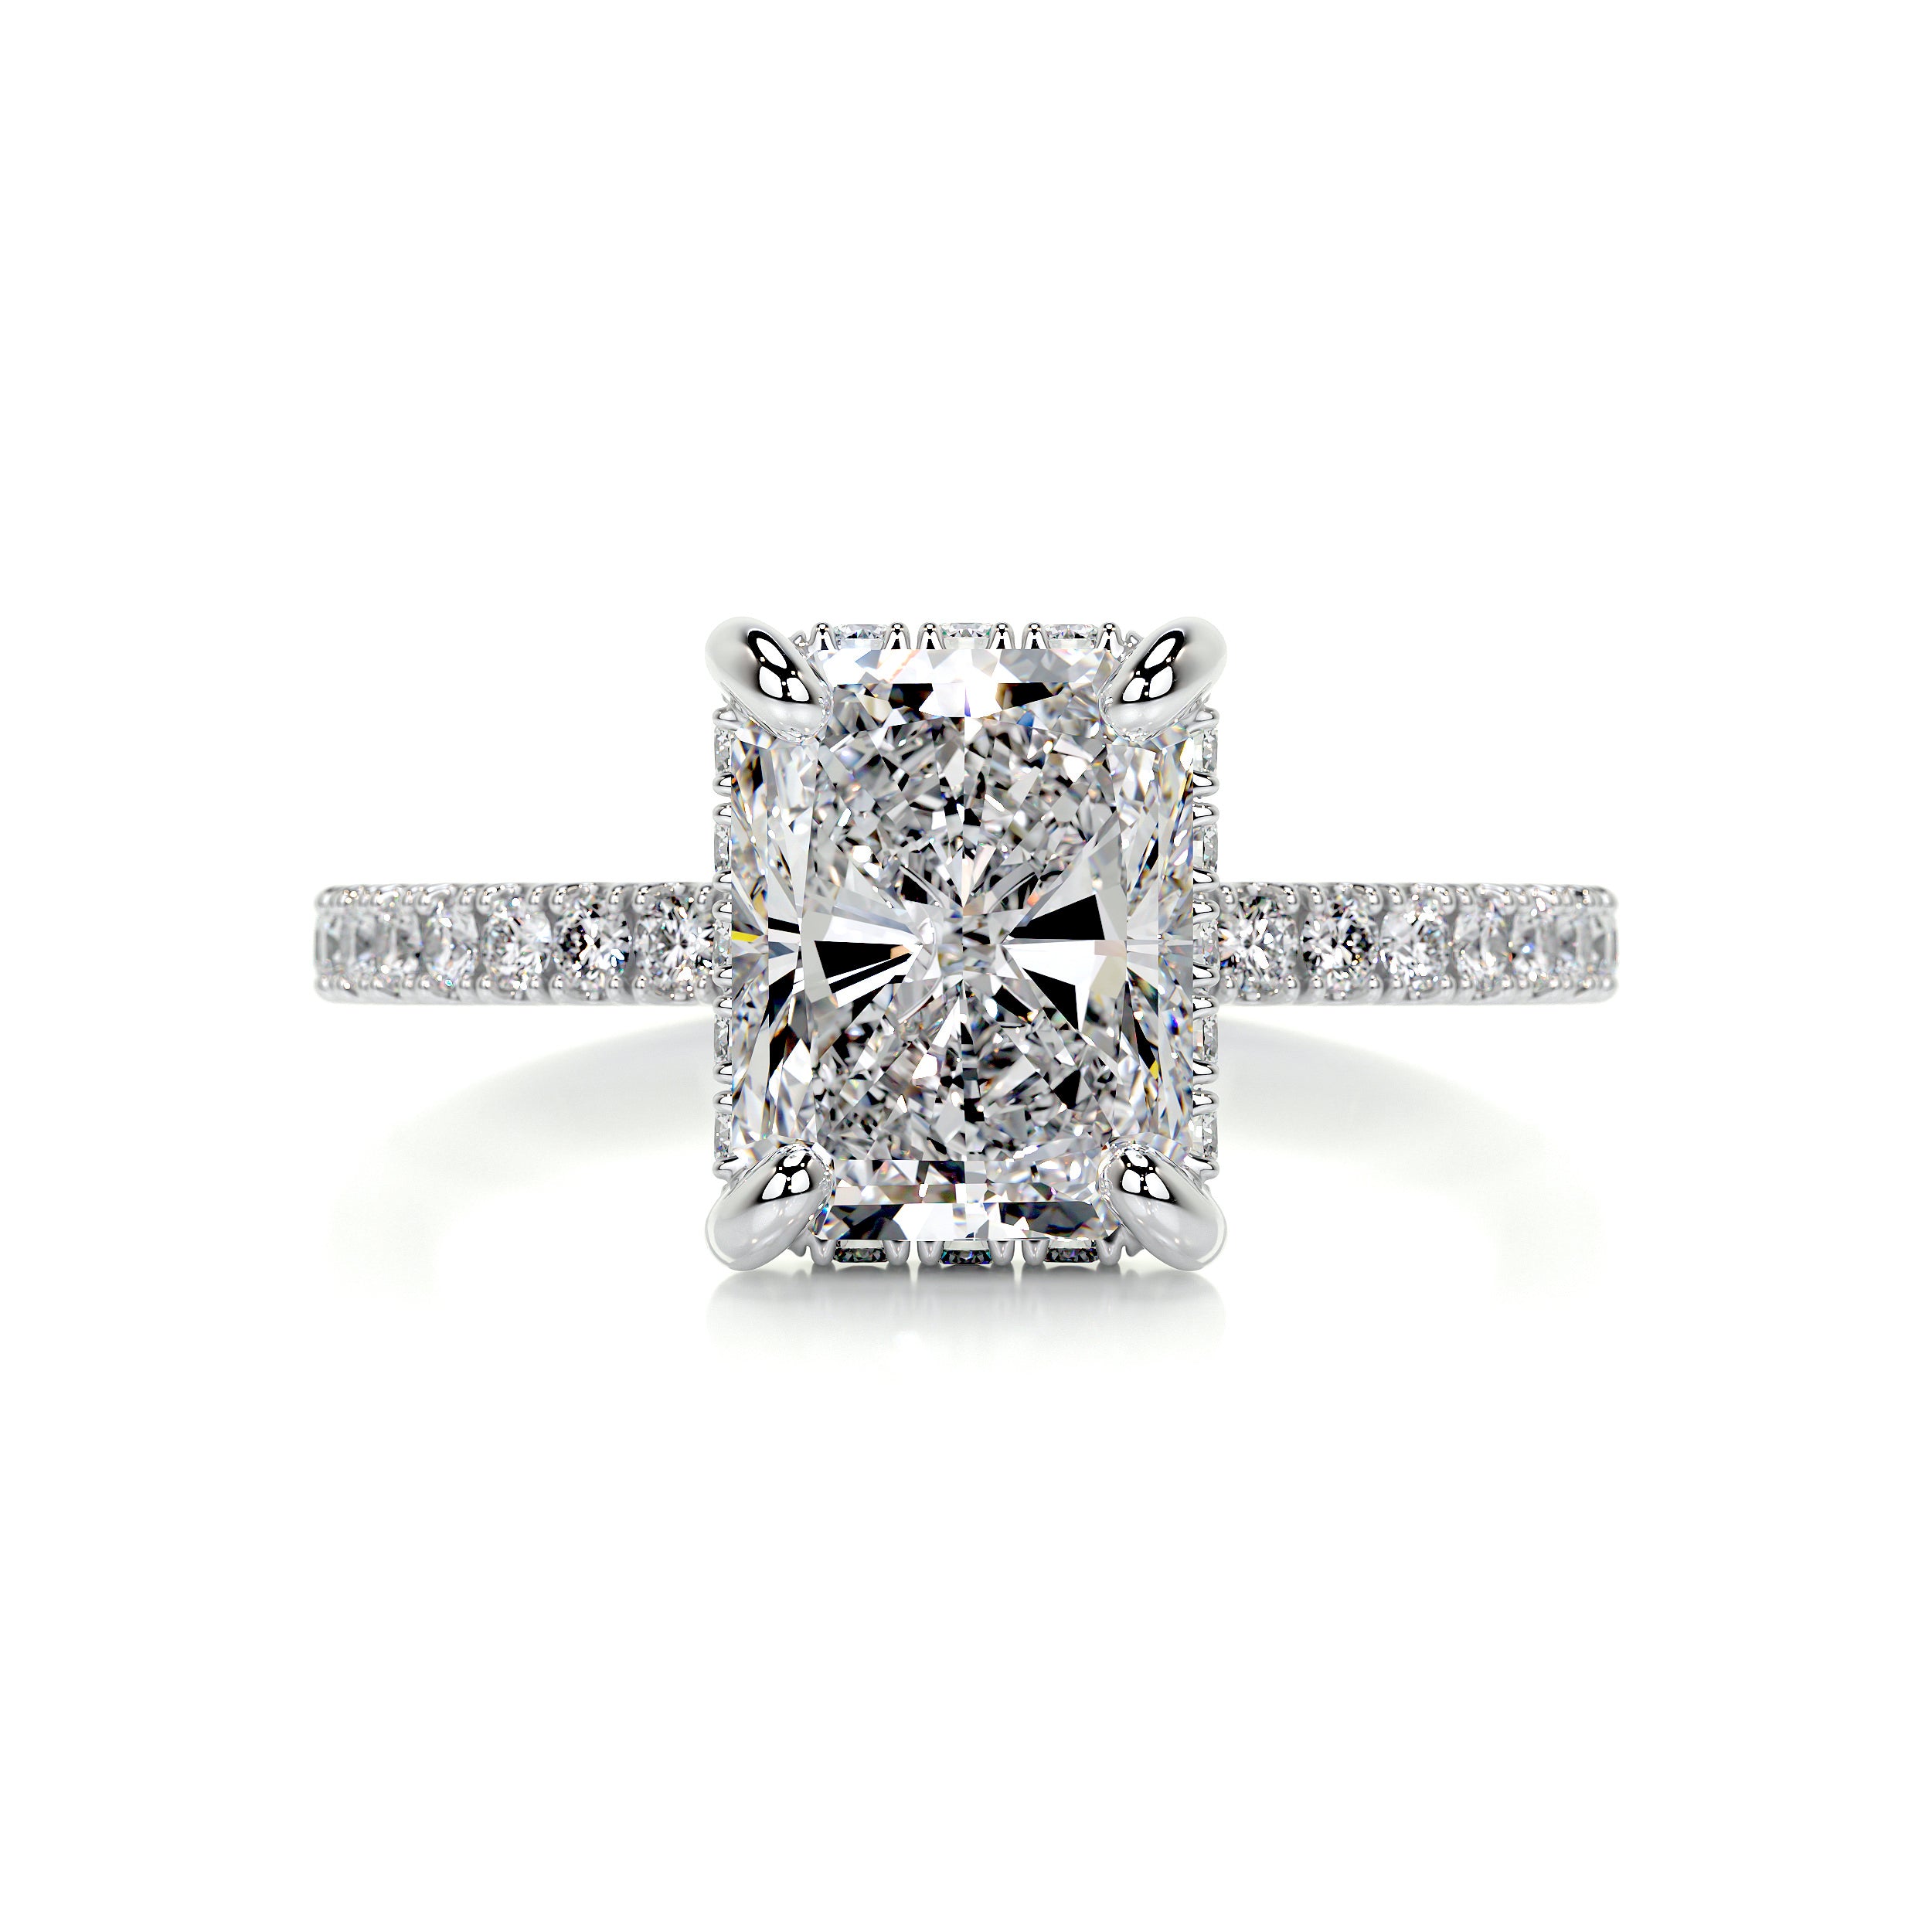 Luna Diamond Engagement Ring   (2 Carat) -14K White Gold